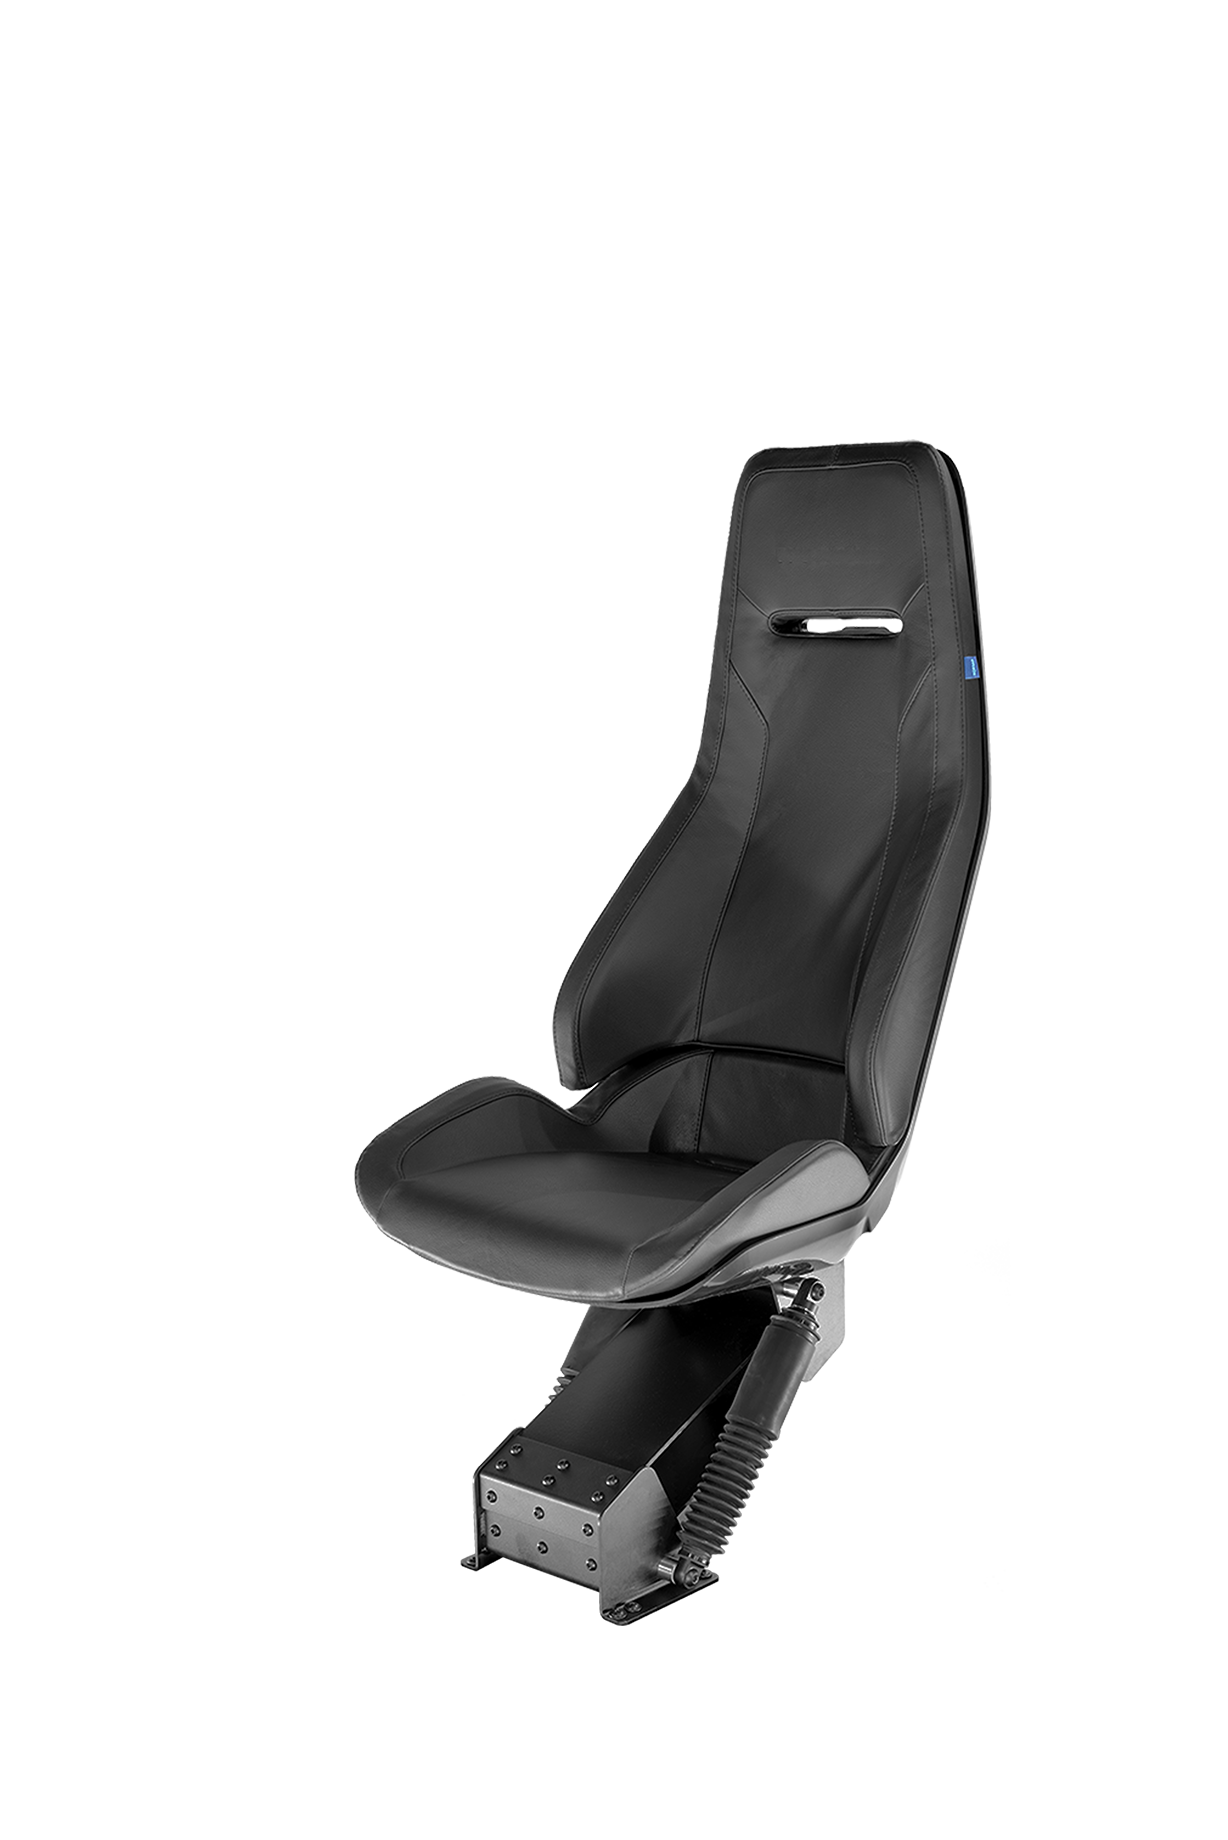 Norsap 150 Performance, shock absorbing seat